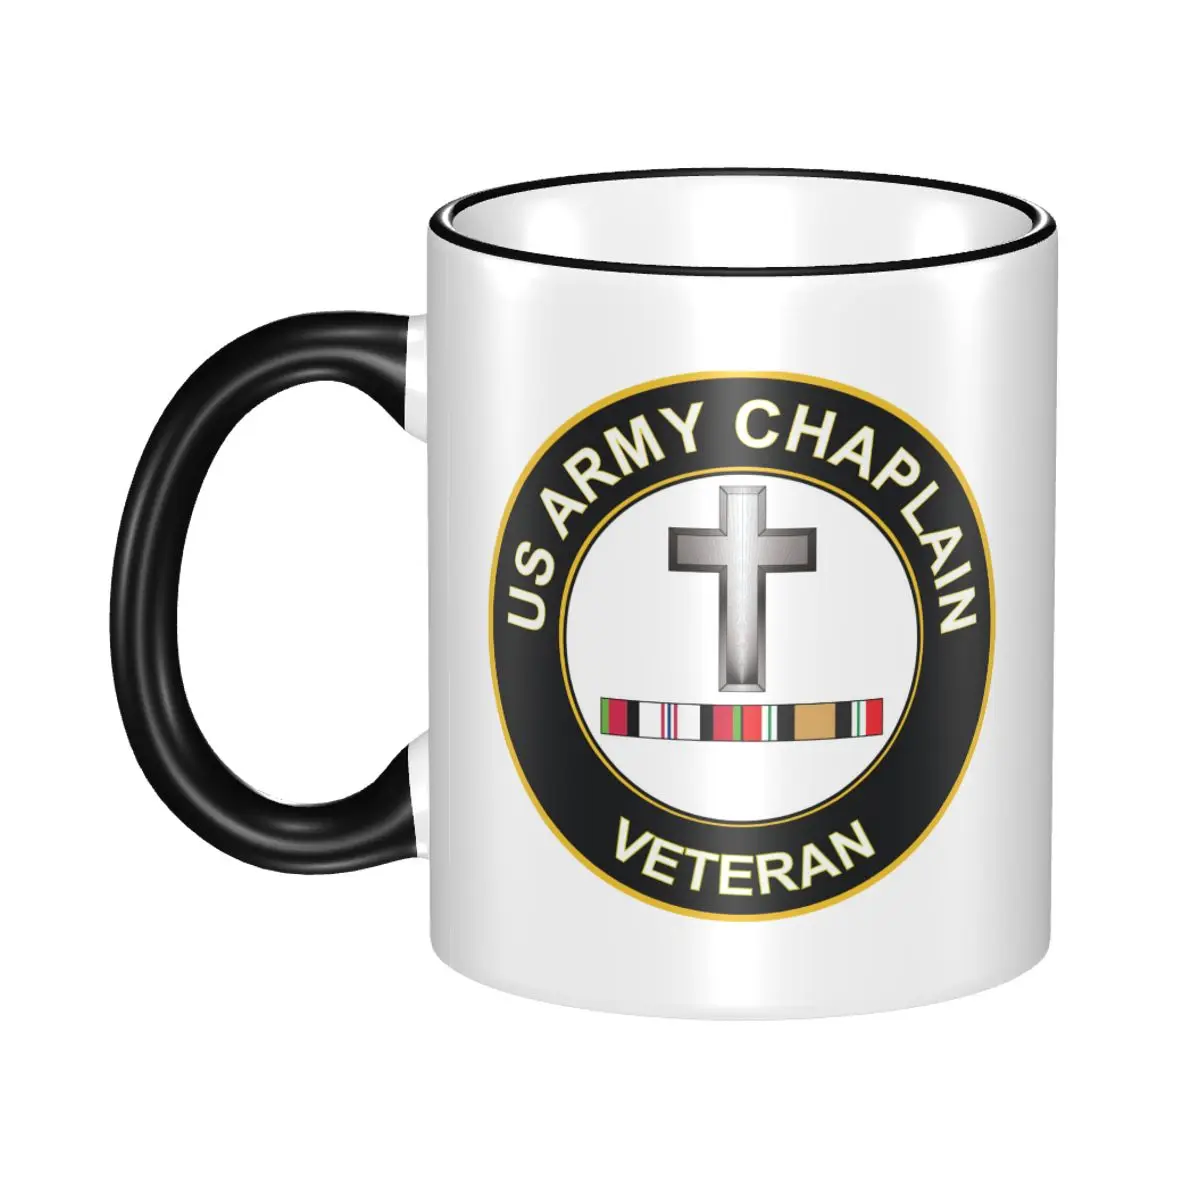 

Кофейные кружки, чайные чашки, армейские христианские чаллианские, афганистанские и ираковые наклейки, домашняя наклейка, посуда для кофе, посуда для напитков, чашки